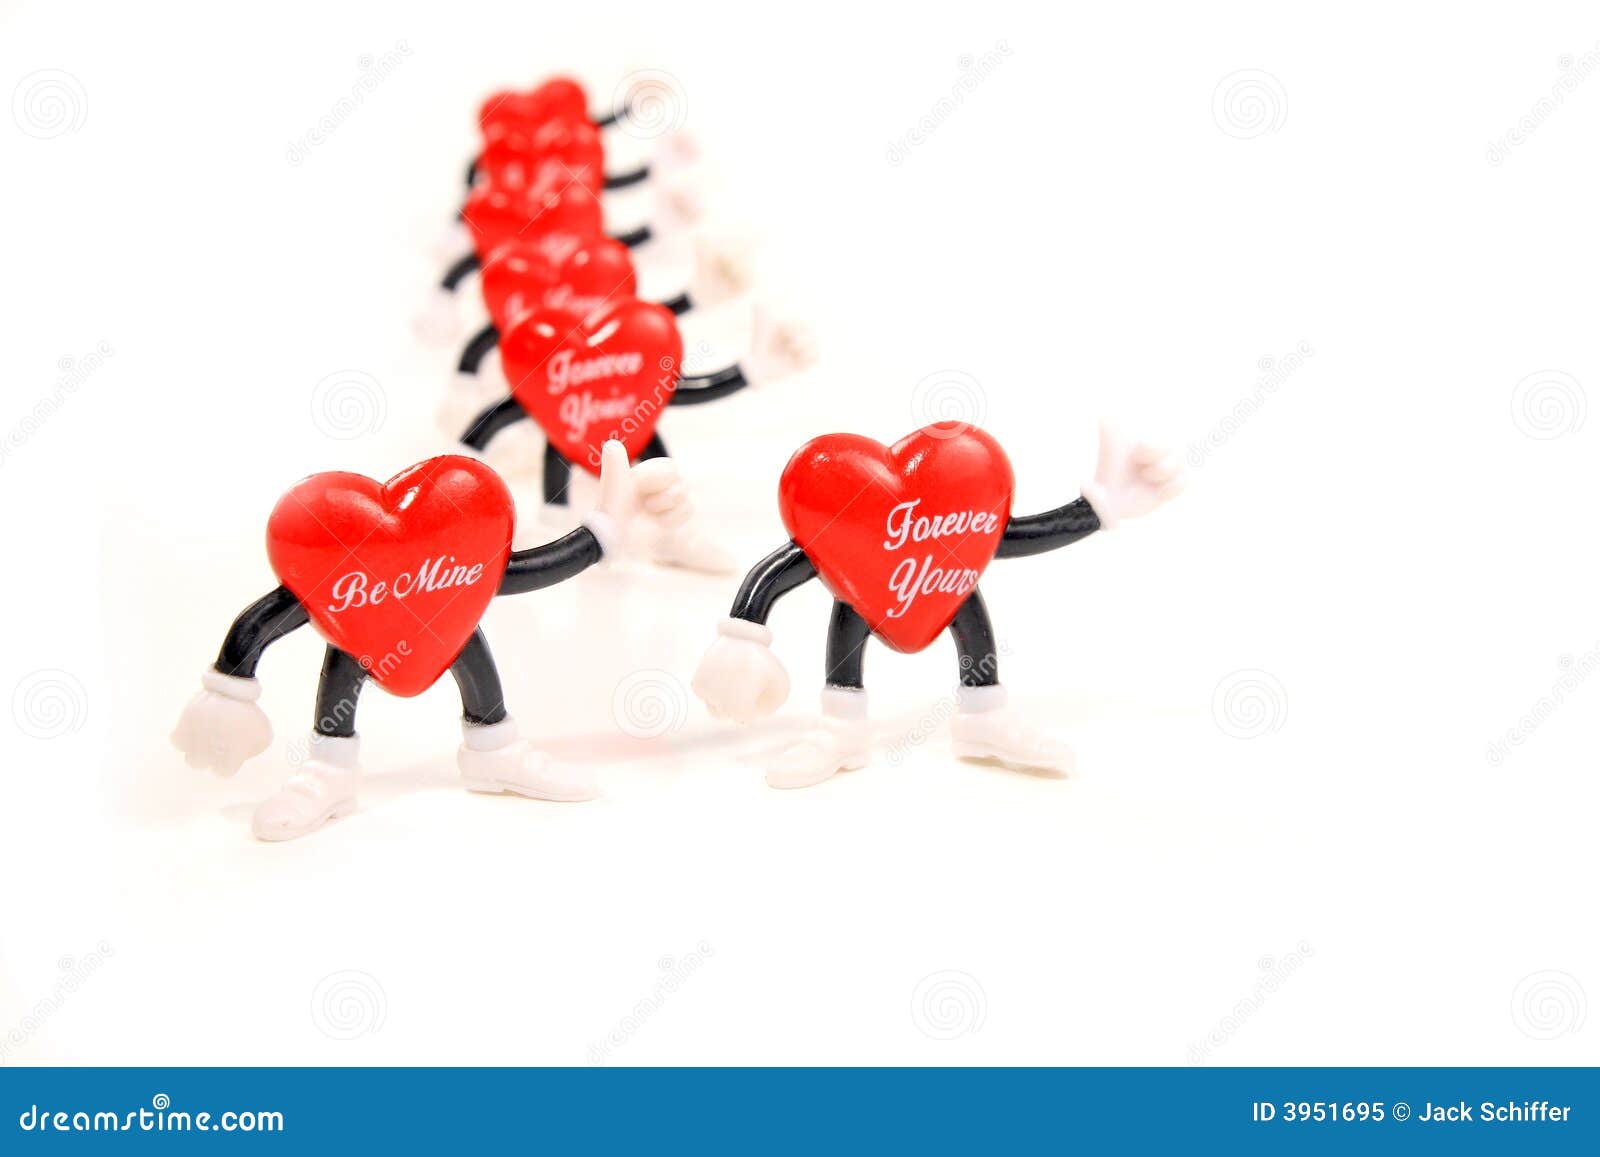 valentine heart messages